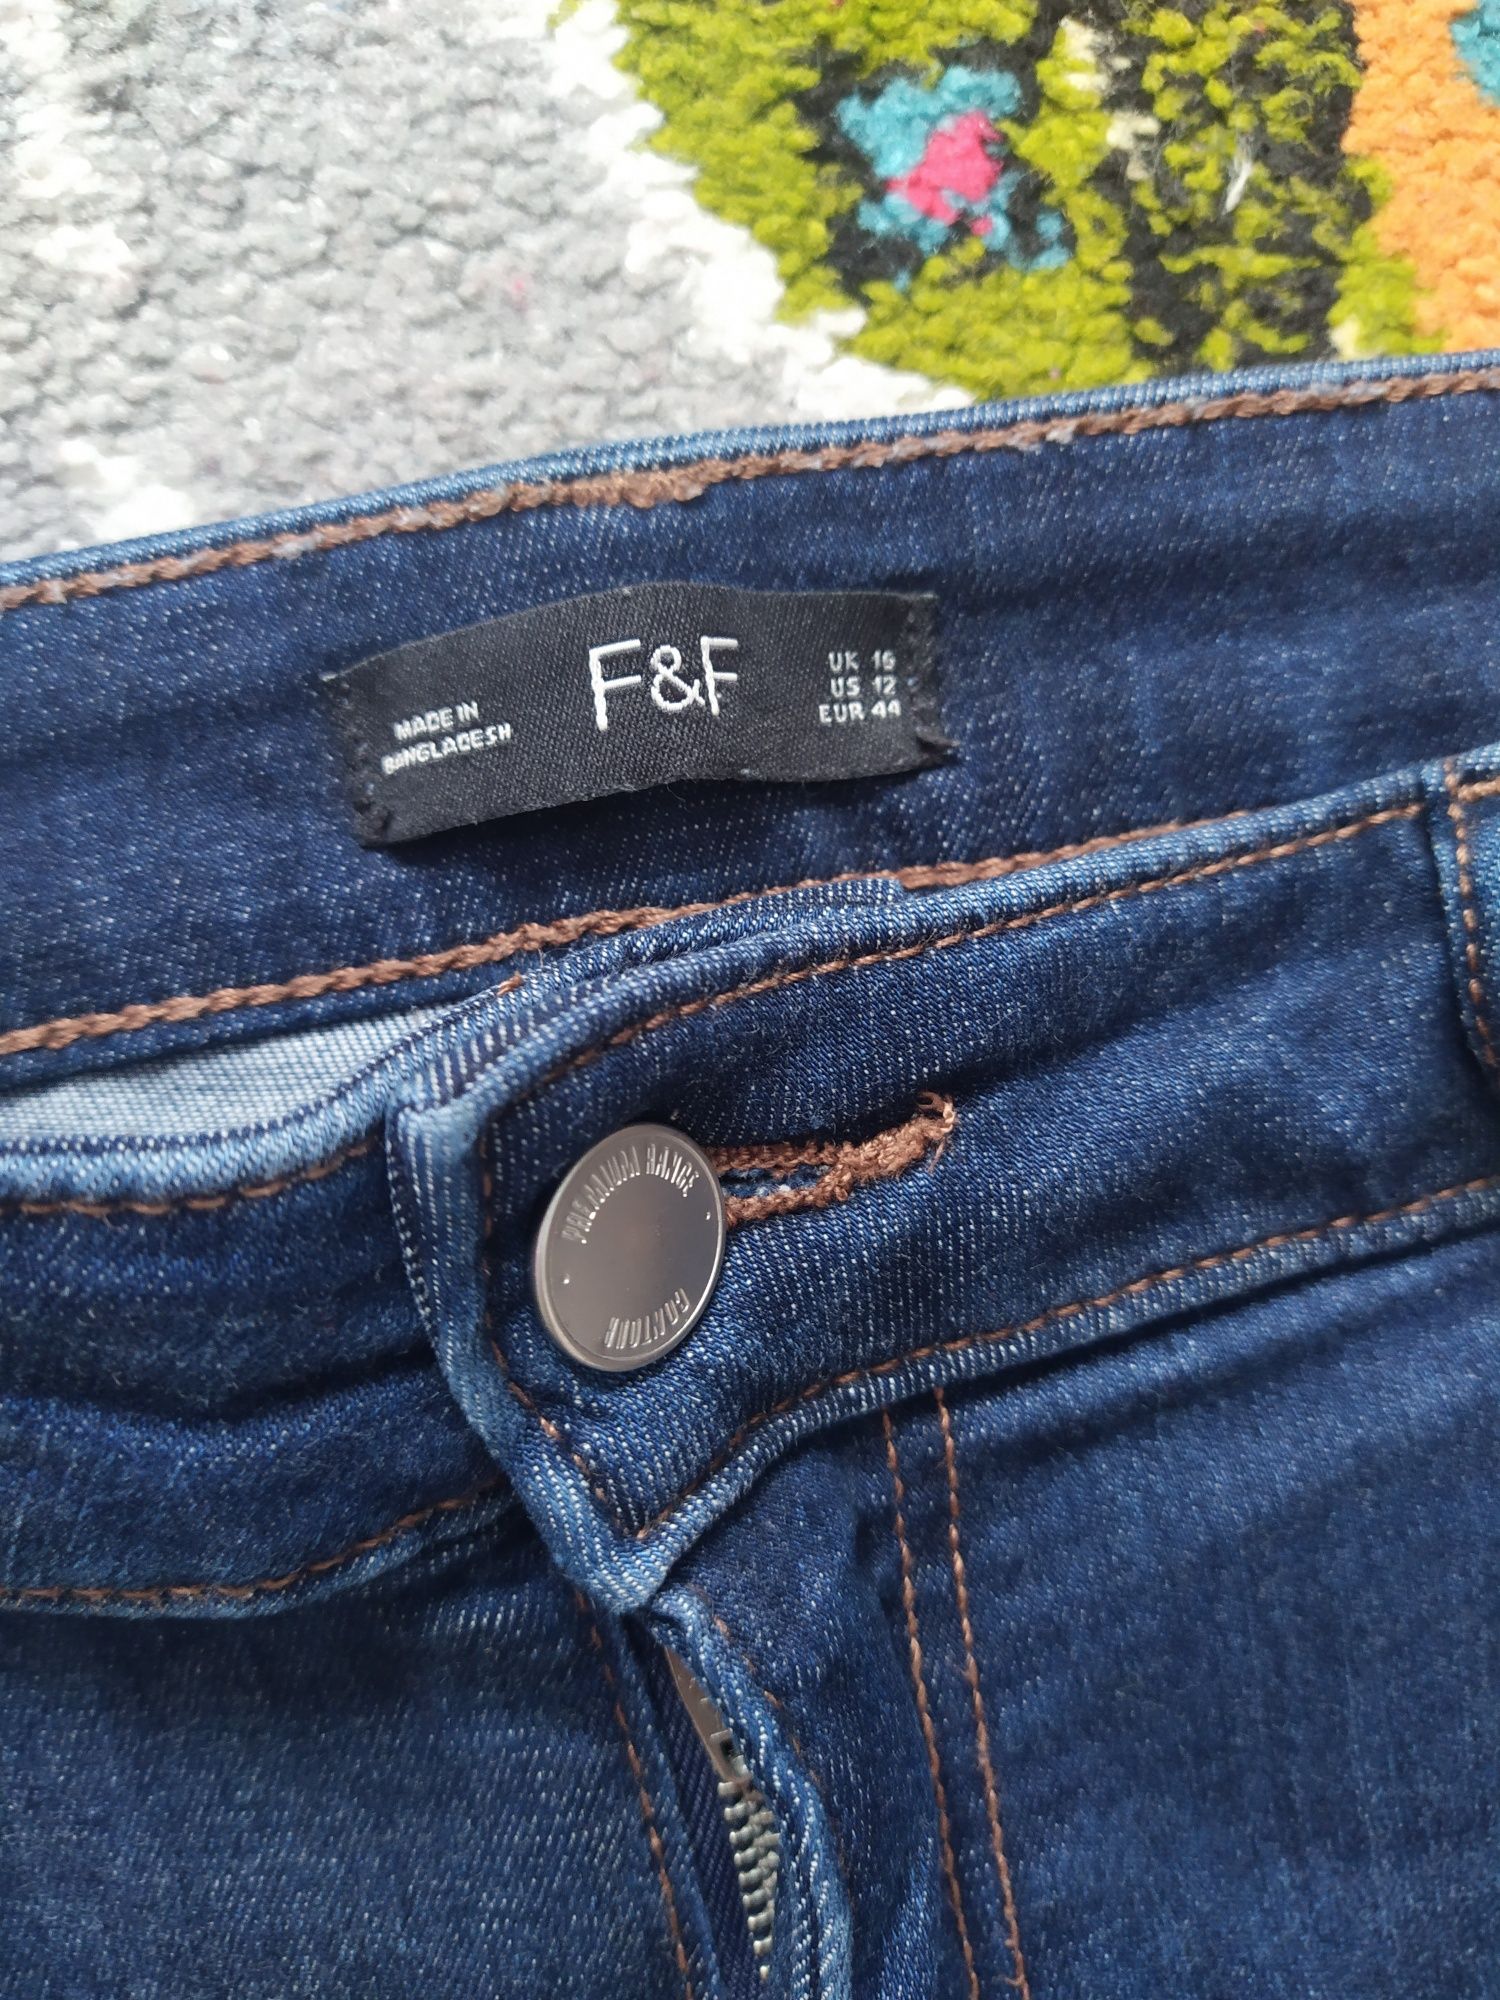 Spodnie jeans f&f r 44